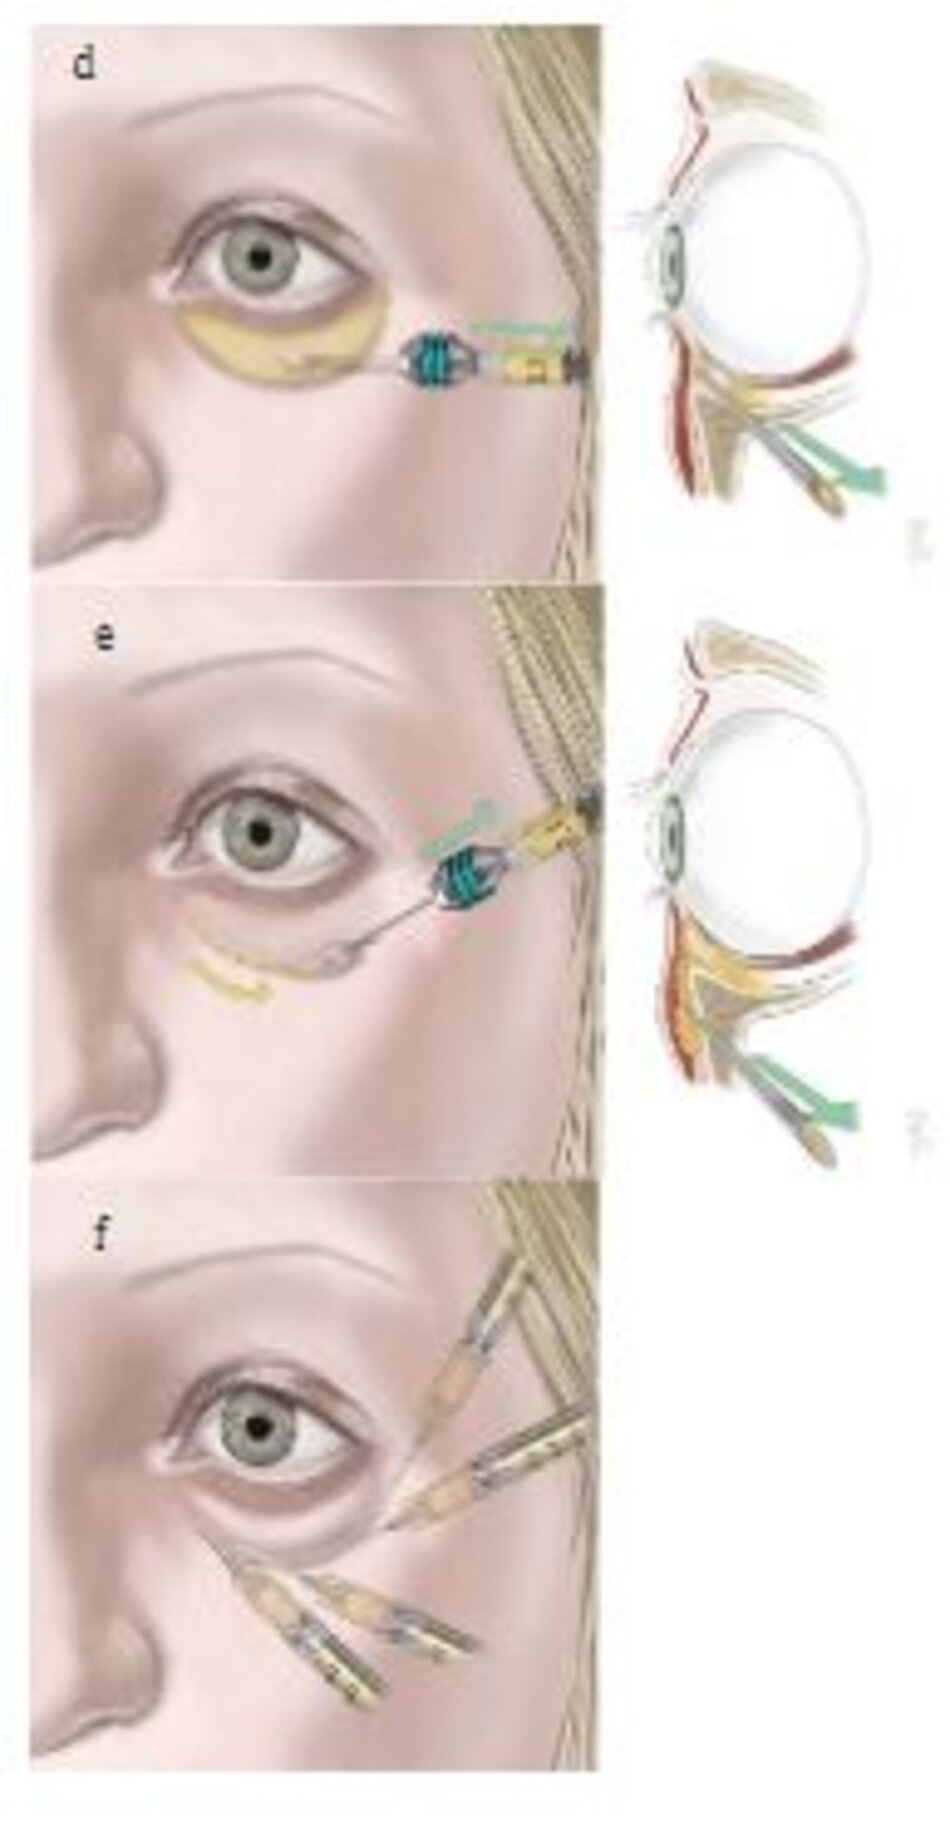 Hình. 8.6 Phẫu thuật tạo hình mi mắt và ghép mỡ. (a) Dạng lão hóa mí dưới hay gặp. (b) Giải phóng cung bờ mi sẽ giúp cải thiện da sẫm mà bên du-wois mắt. (c) Lấy mỡ qua kết mạc mi mắt. (d) Tiêm nhũ tương từ bờ ổ mắt hướng đến vùng mí mắt. (e) Tiêm microfat trong vùng bờ ổ mắt và vùng má để cải thiện da ở những vùng này. (f) Tiêm nanofat hay SNIE để cải thiện màu sắc da của mi mắt dưới.